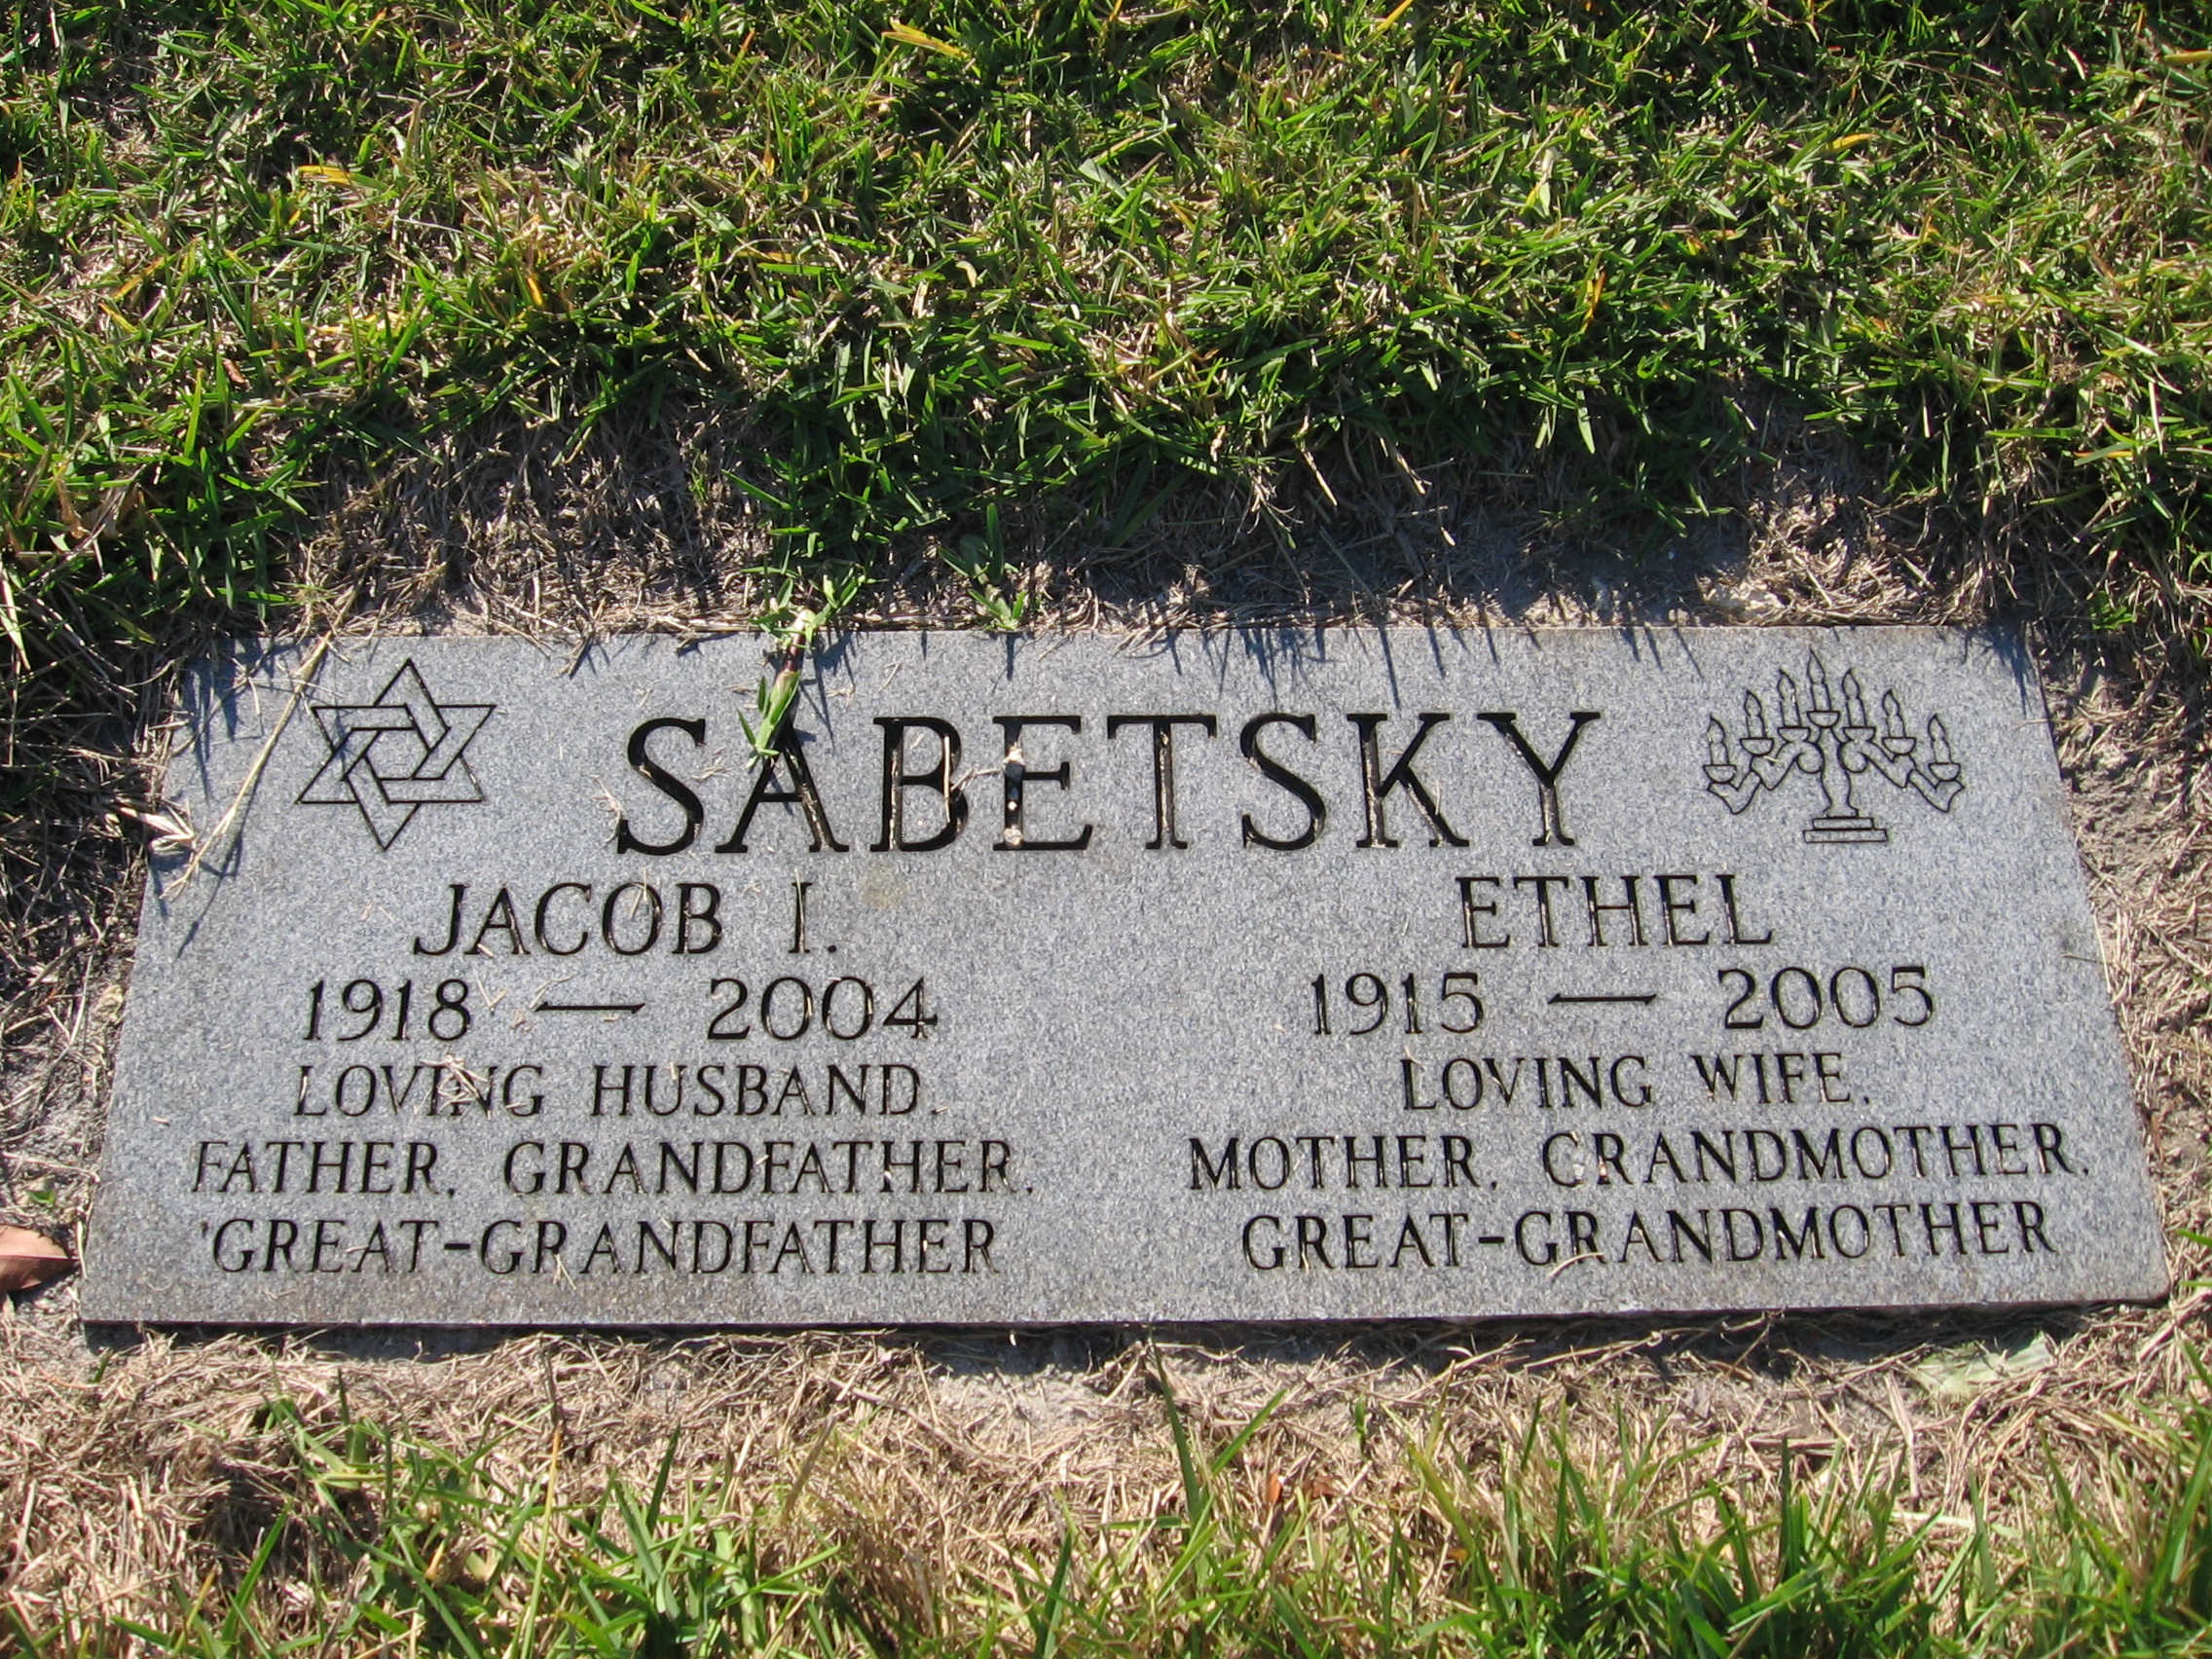 Jacob I Sabetsky